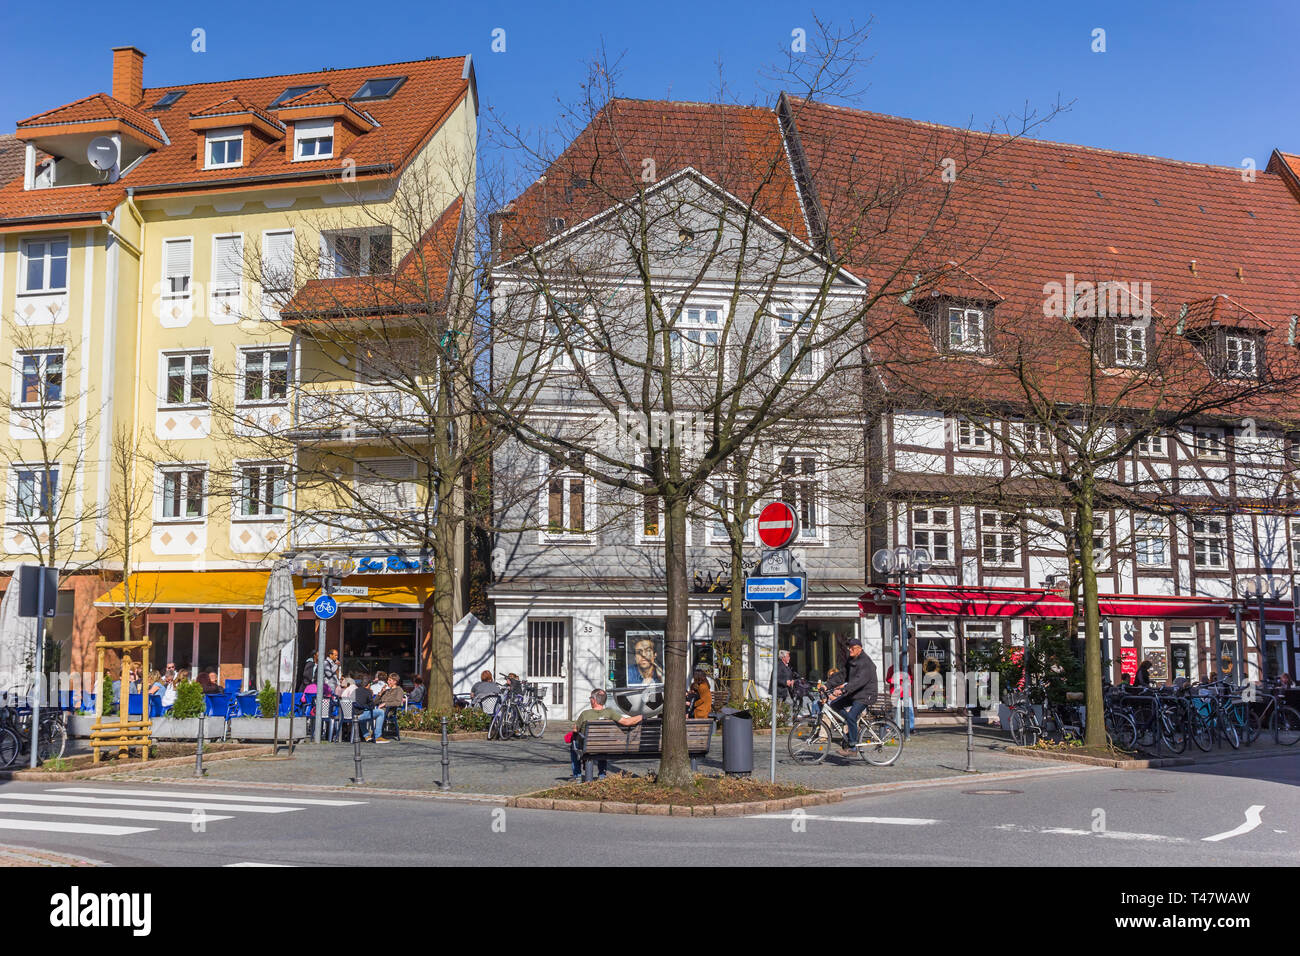 Geschäfte und Restaurant in der historischen Stadt Lippstadt, Deutschland Stockfoto